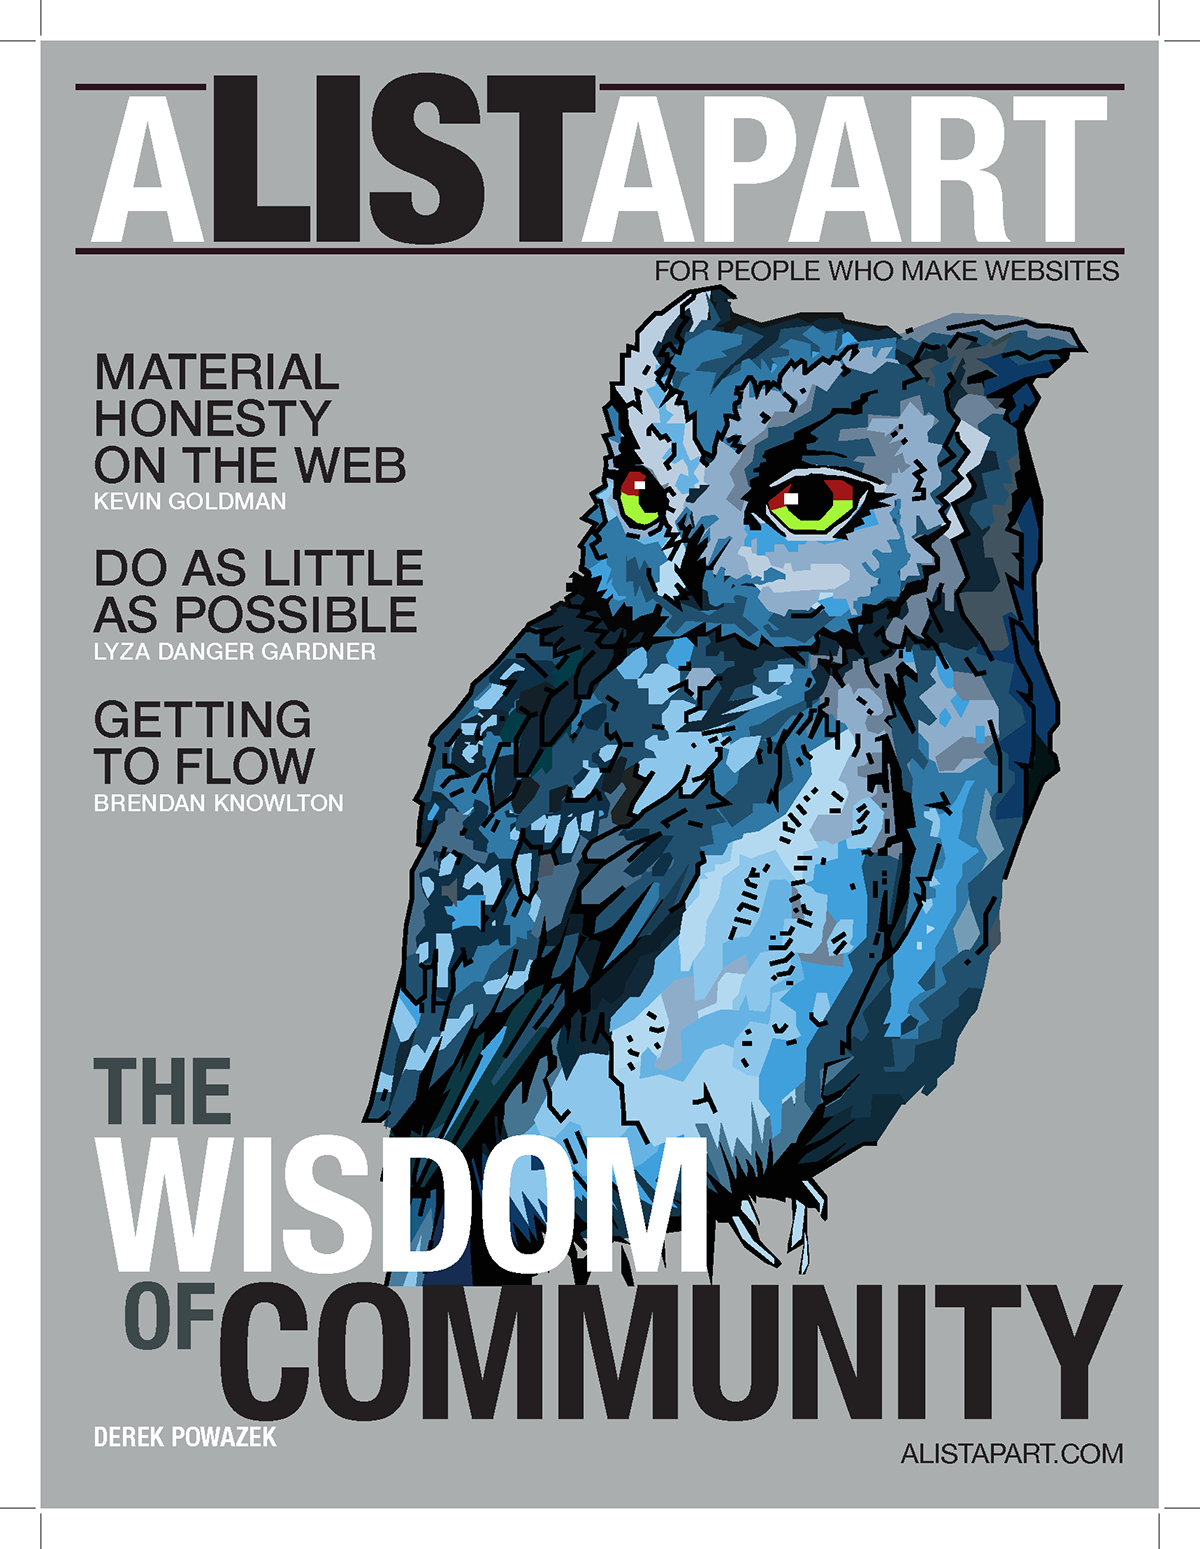 wisdom of community owl material honesty alistapart.com umsl editorial magazine student Nick mantia